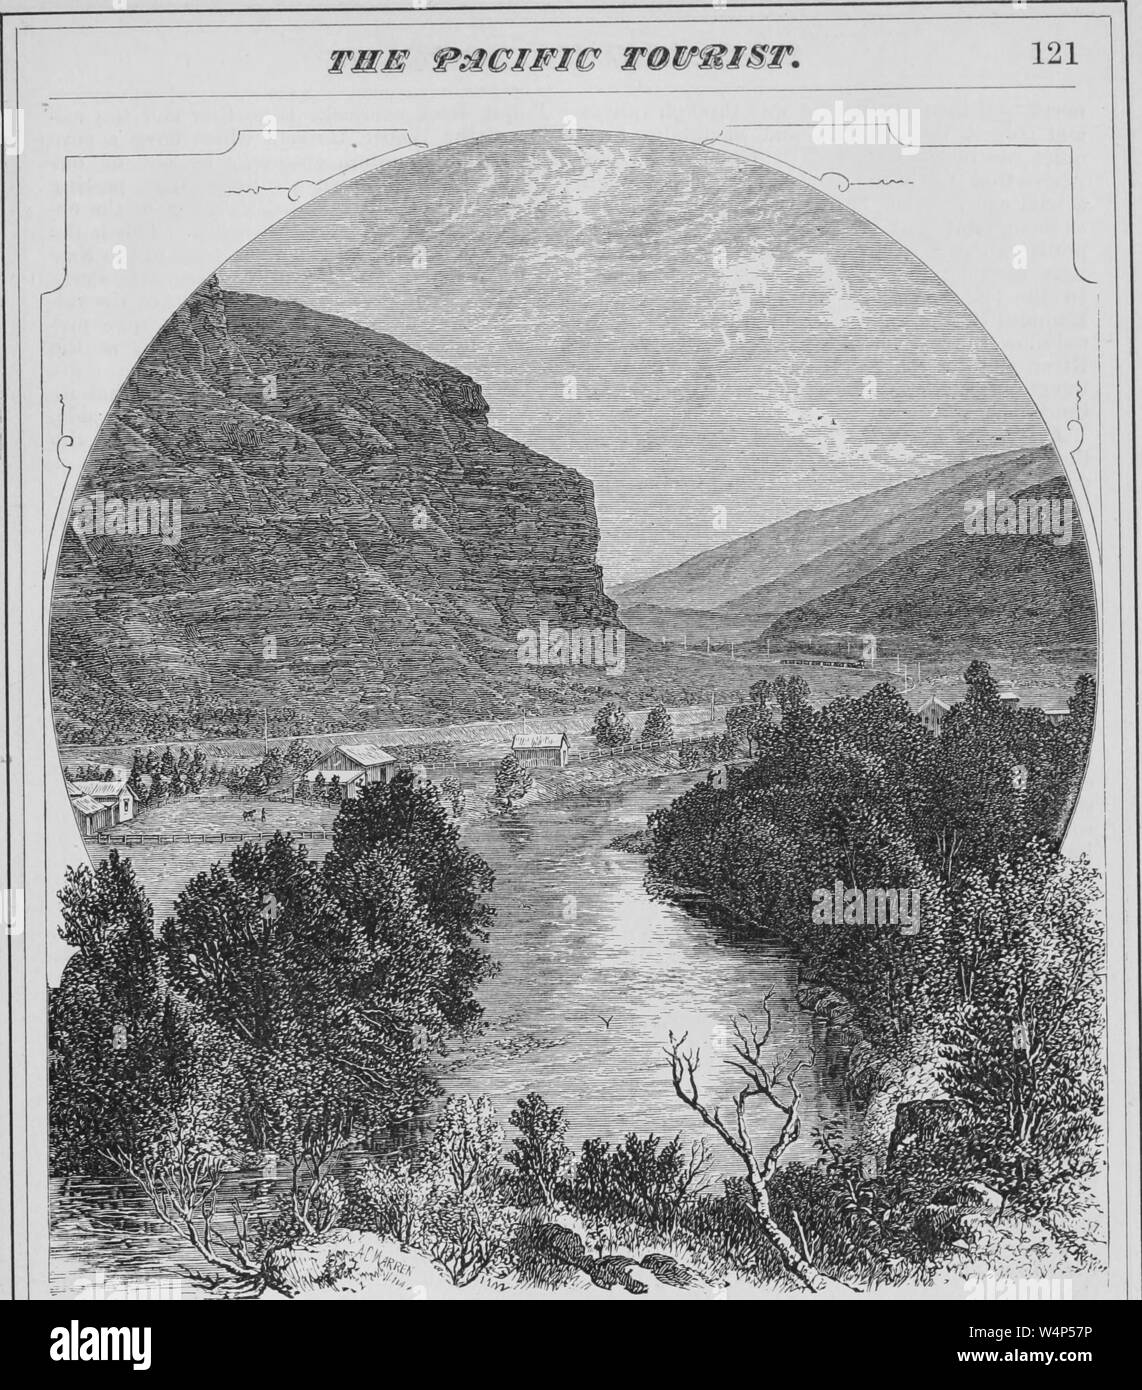 Incisione di bocca di Echo Canyon, Summit County, Utah, dal libro "pacifico" turistici da Henry T. Williams, 1878. La cortesia Internet Archive. () Foto Stock